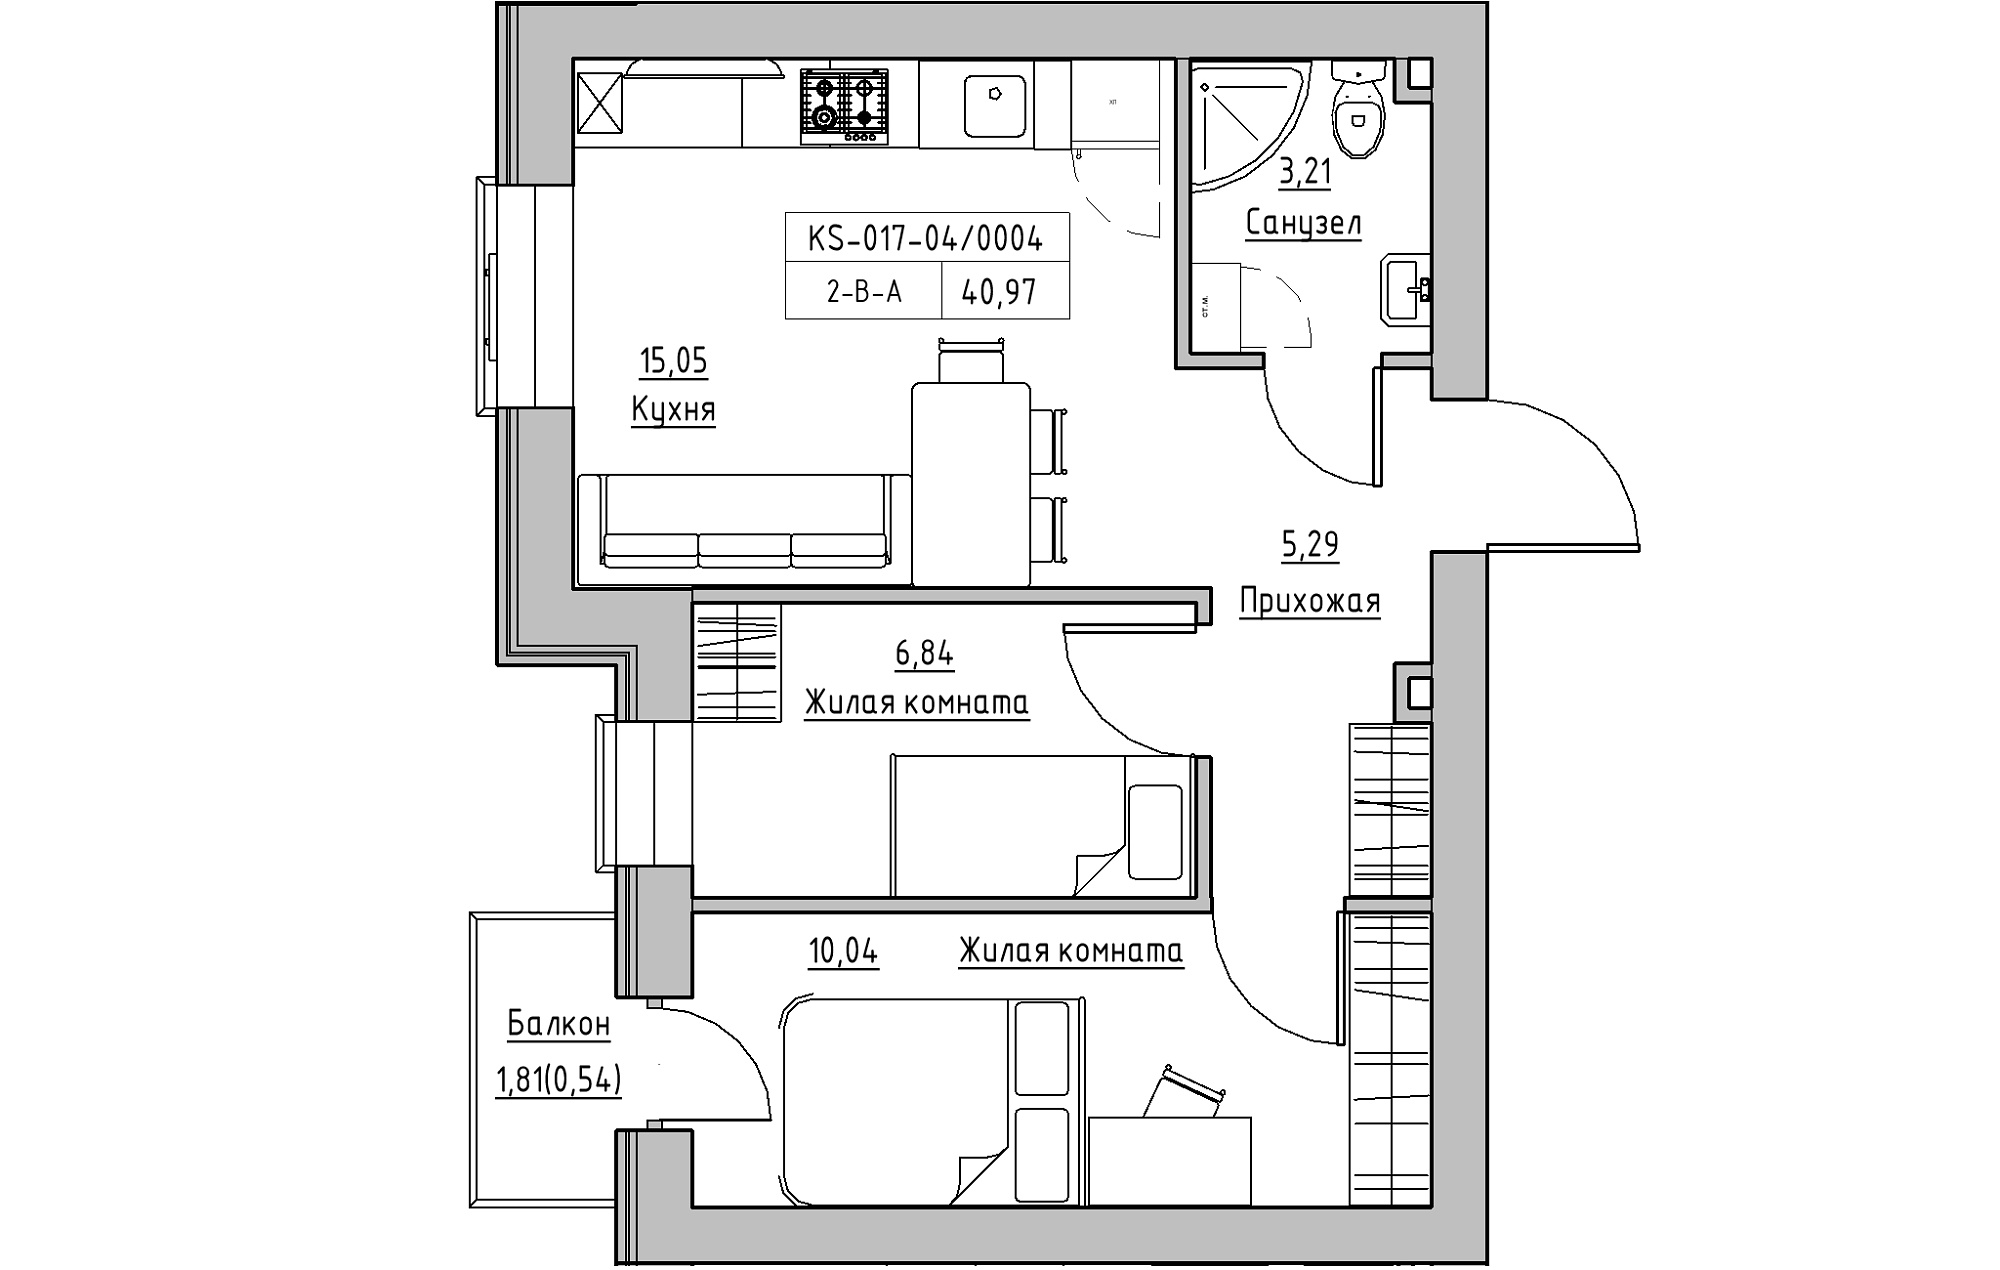 Планування 2-к квартира площею 40.97м2, KS-017-04/0004.